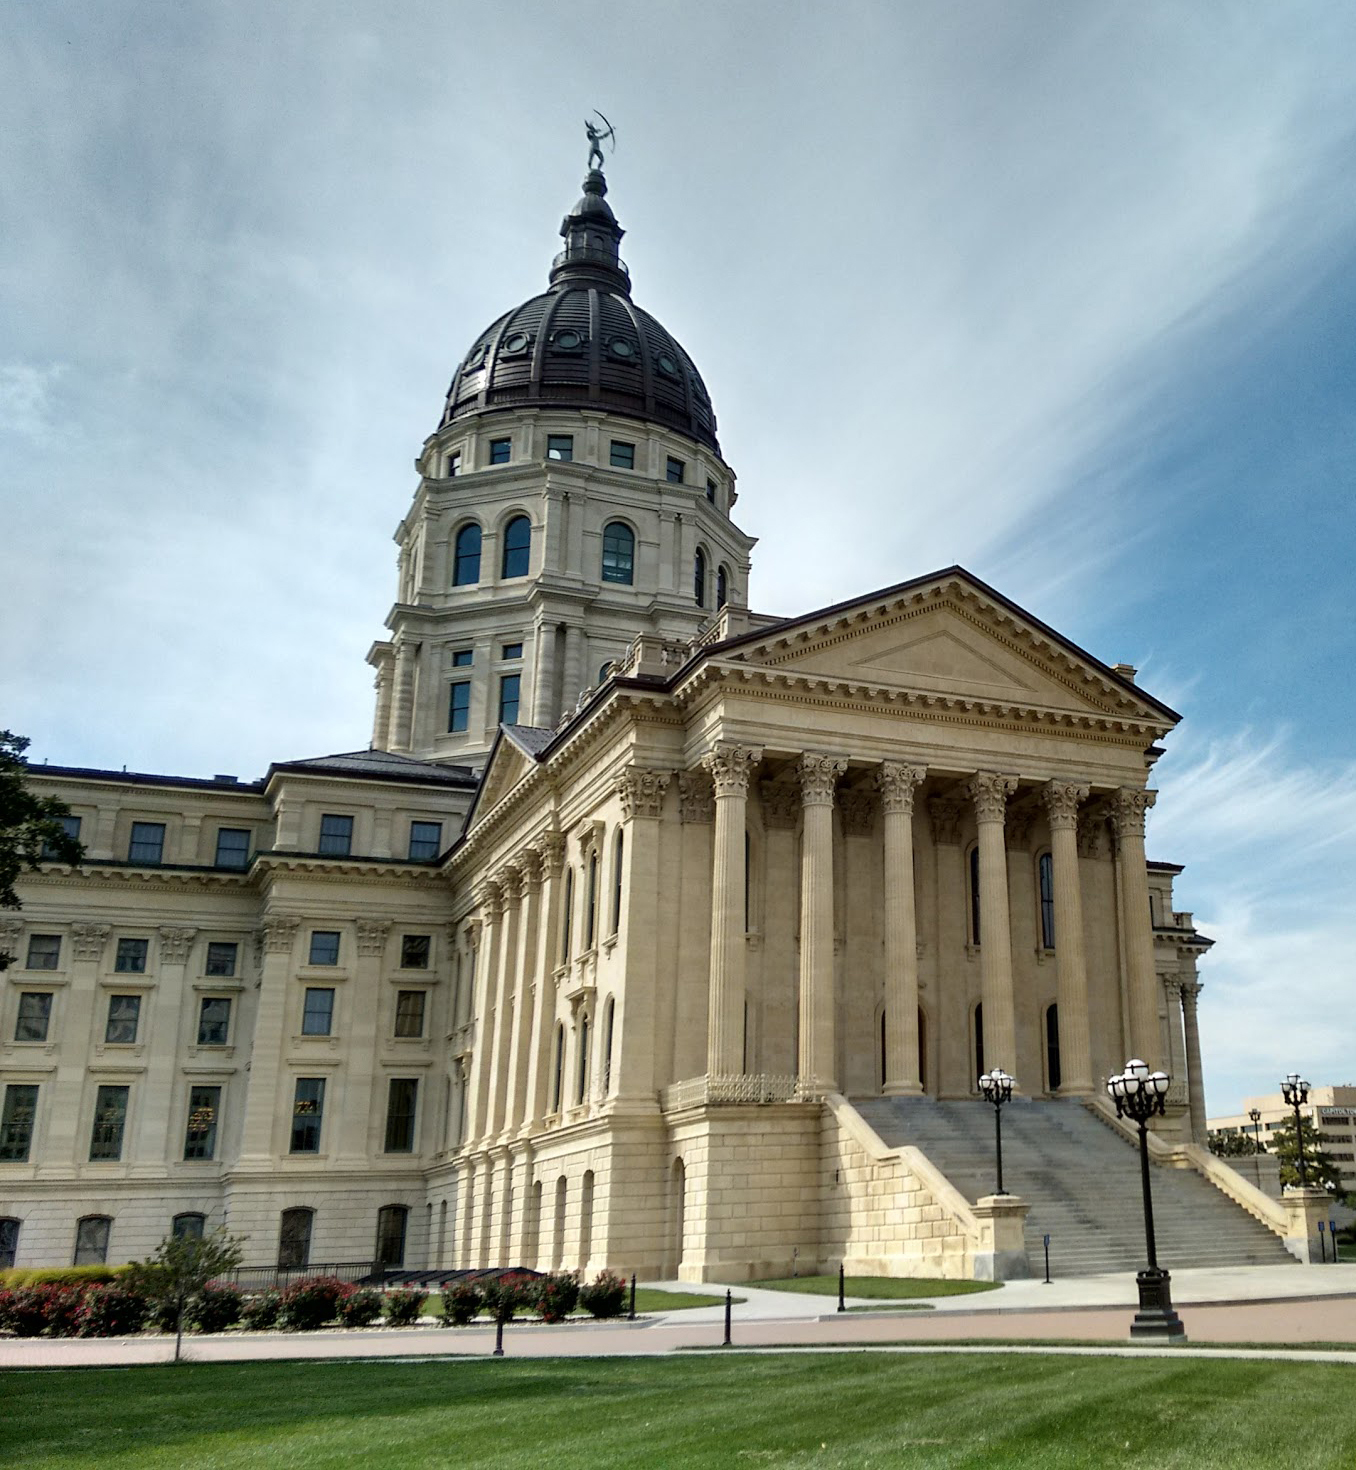 Photograph: Kansas State Capitol